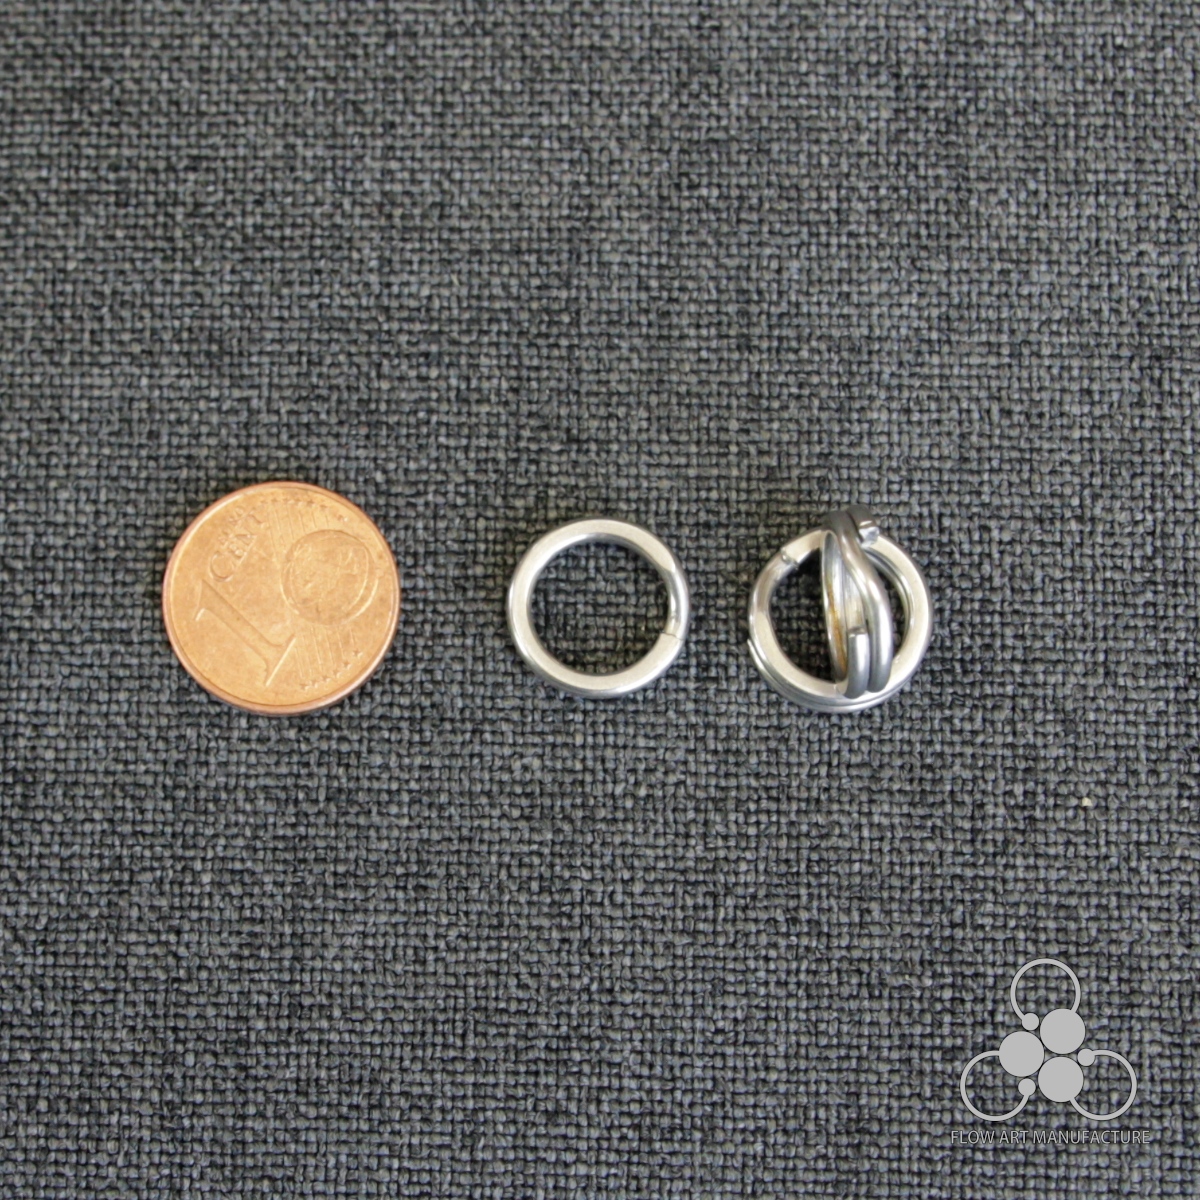 Micro split ring